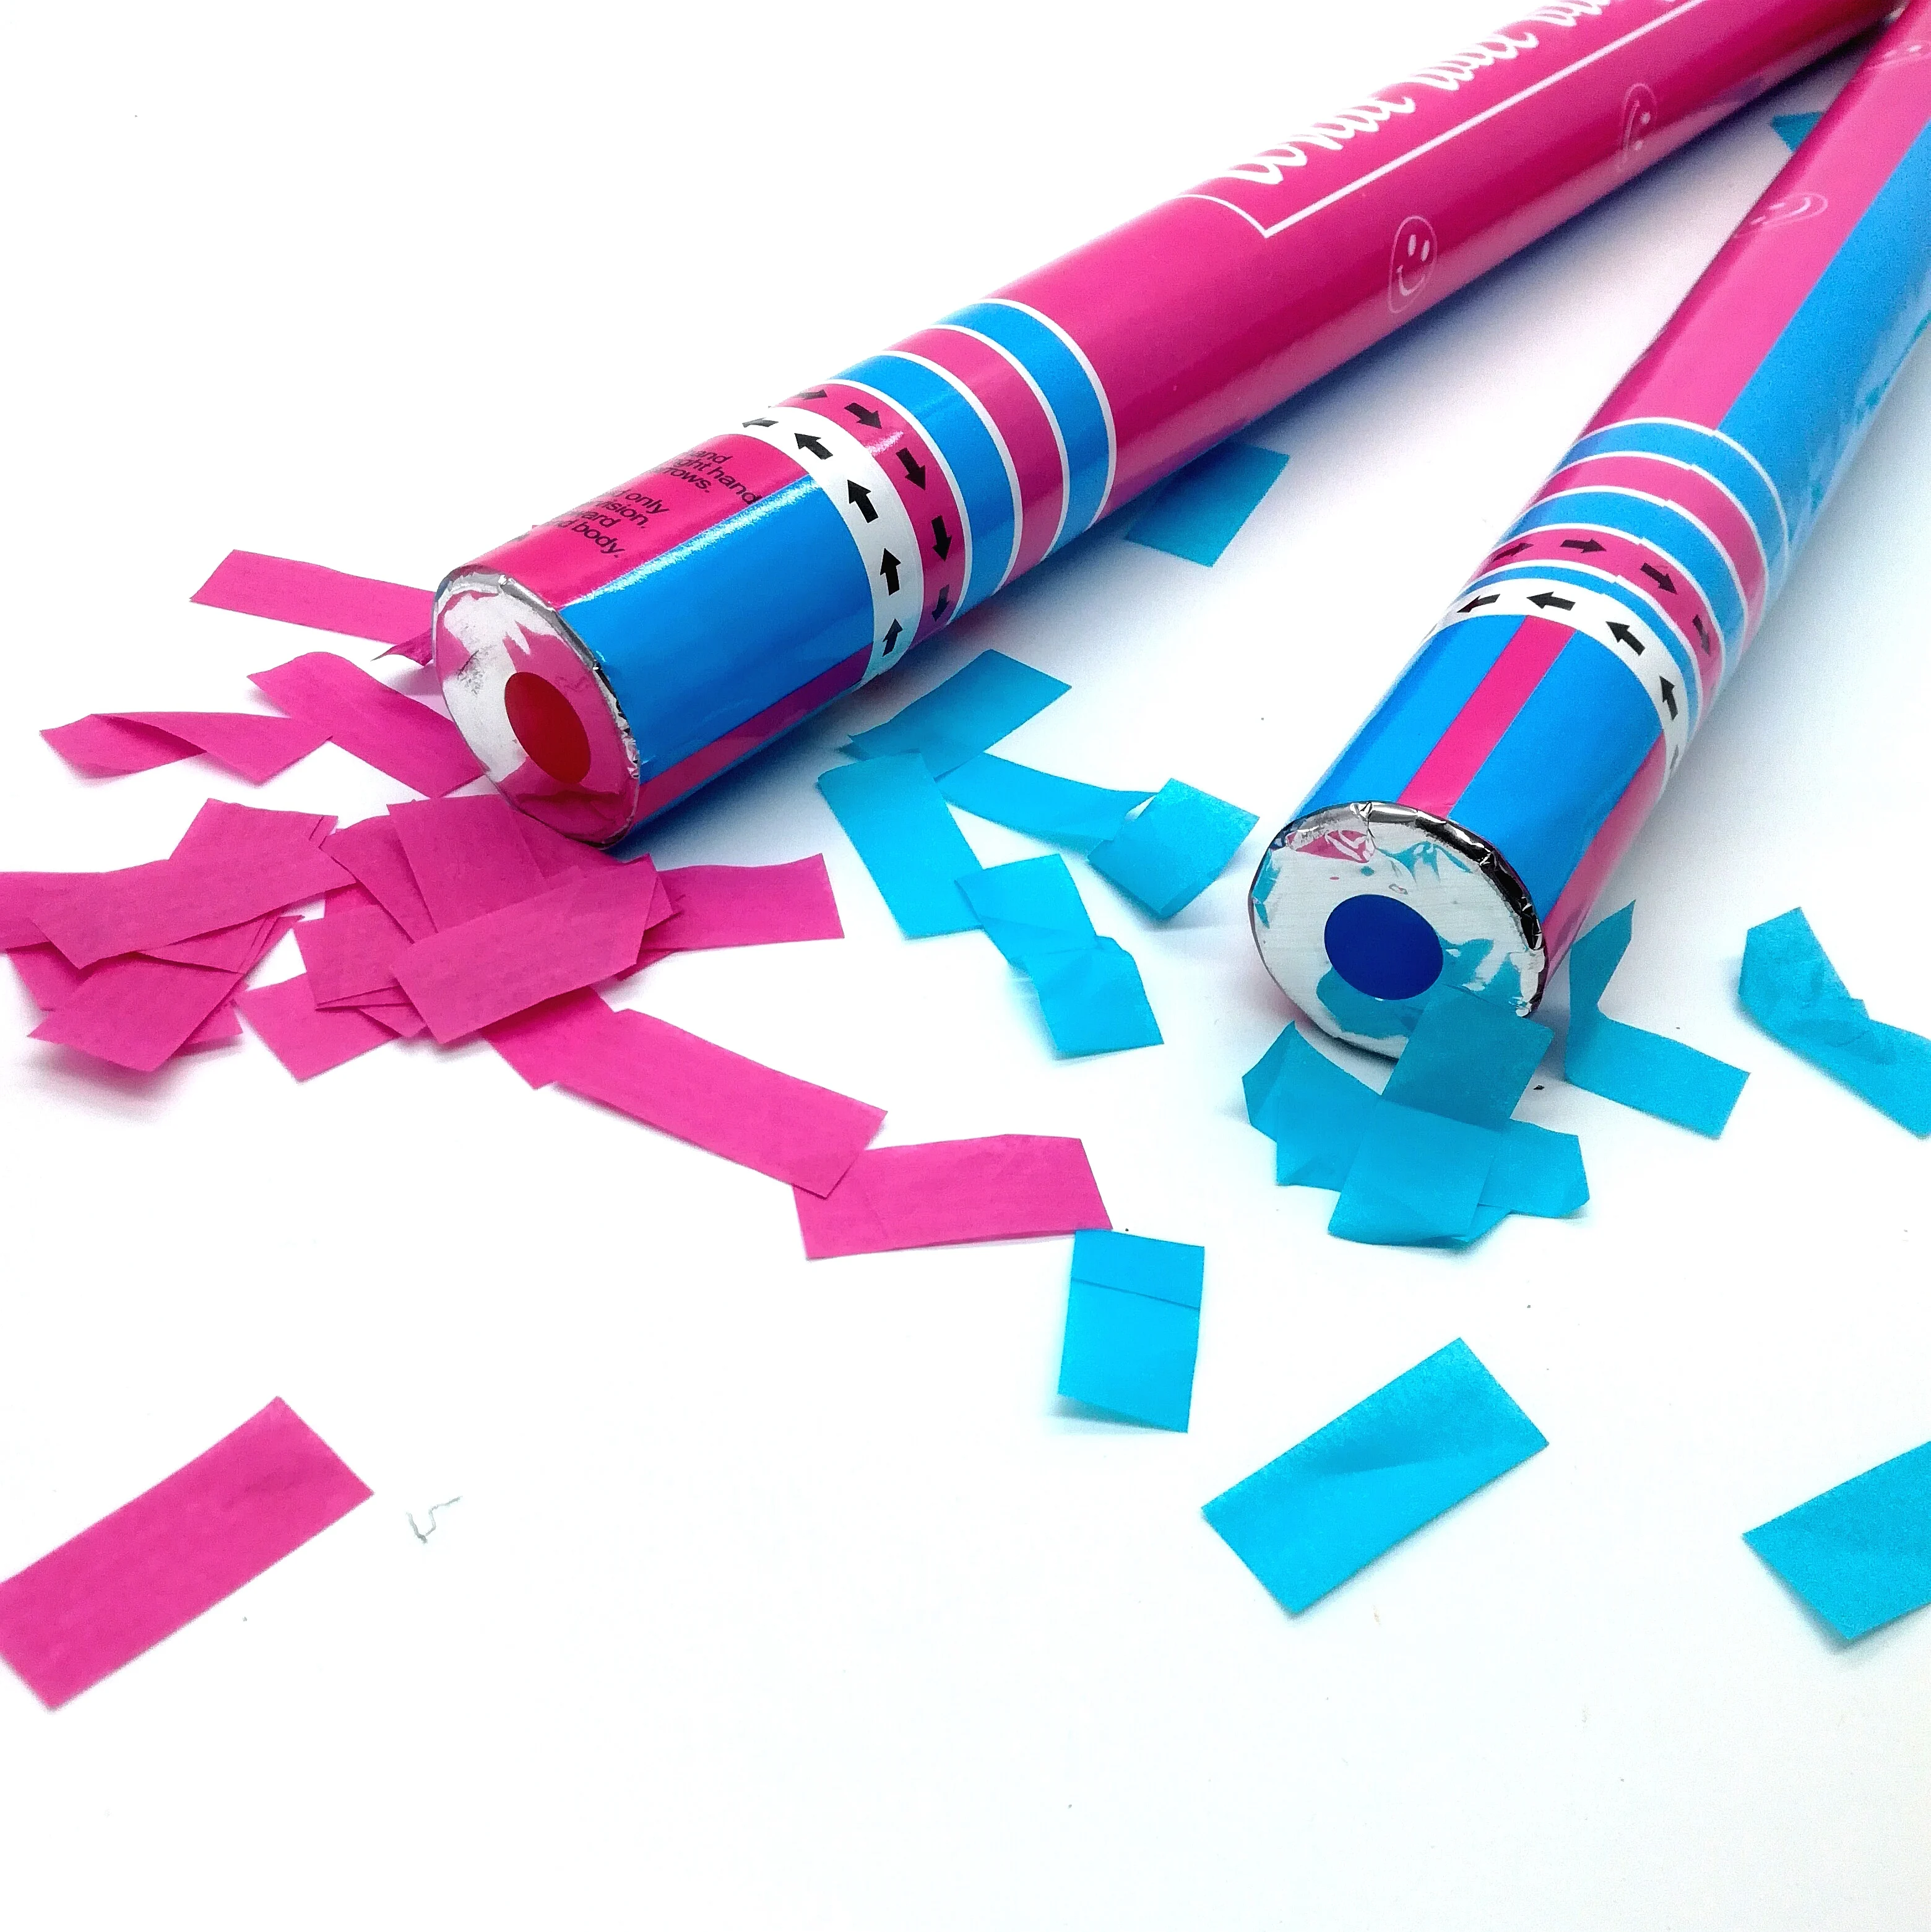 Конфетти из бумаги. Бумага конфетти. Бумажное конфетти пушка. Конфетти розовое и голубое. Как сделать конфетти из бумаги.